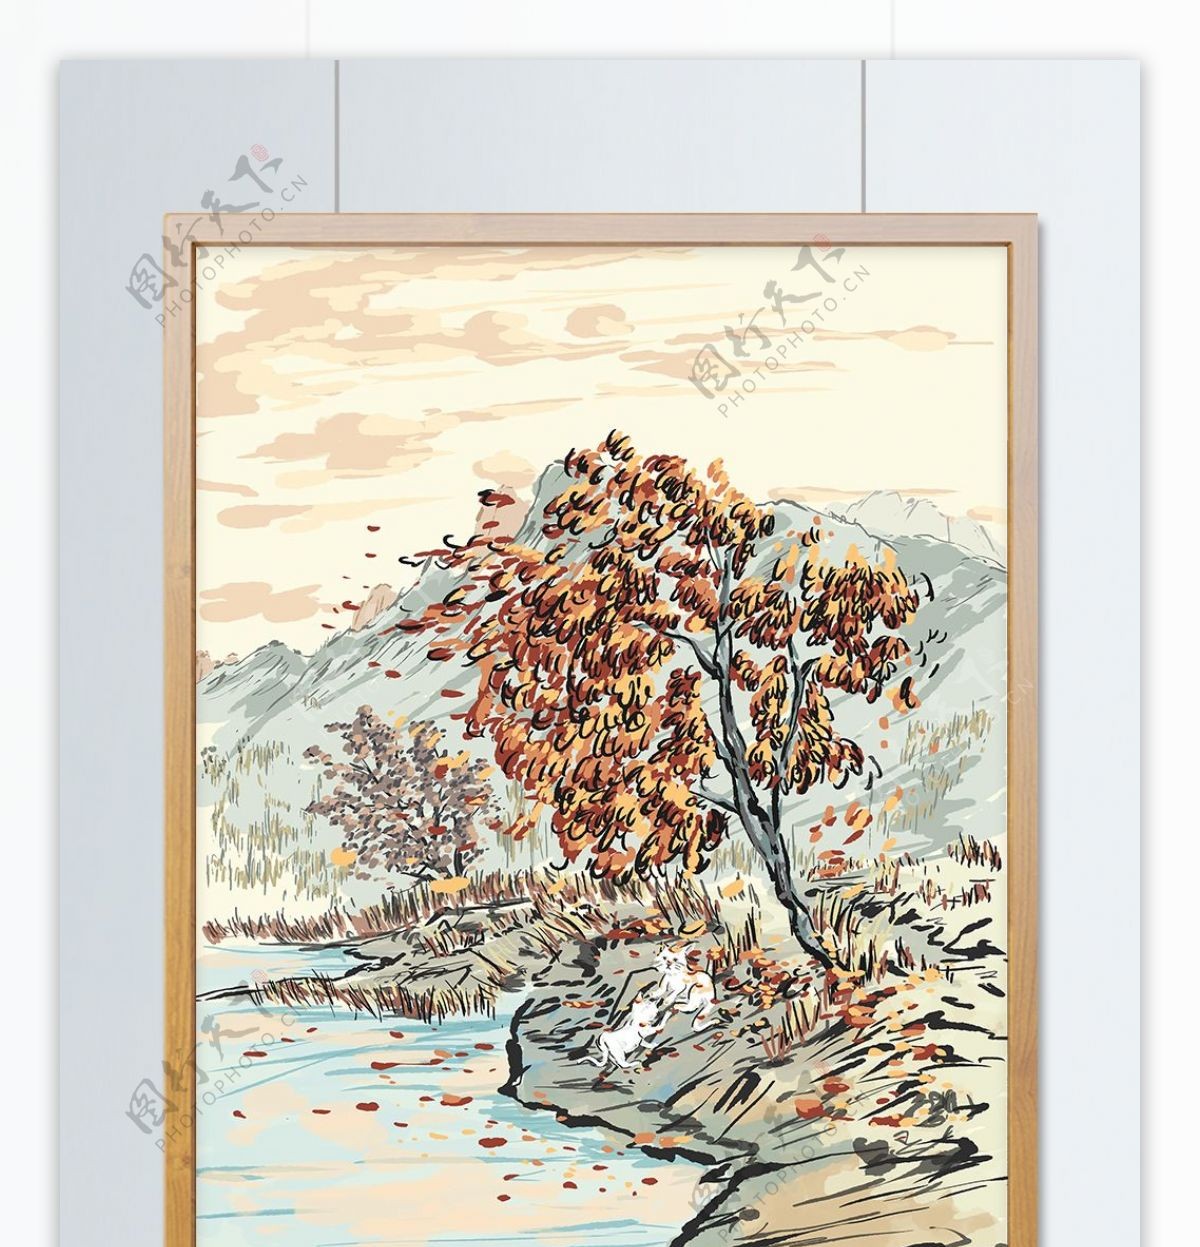 原创中国风水墨插画秋季的落叶天